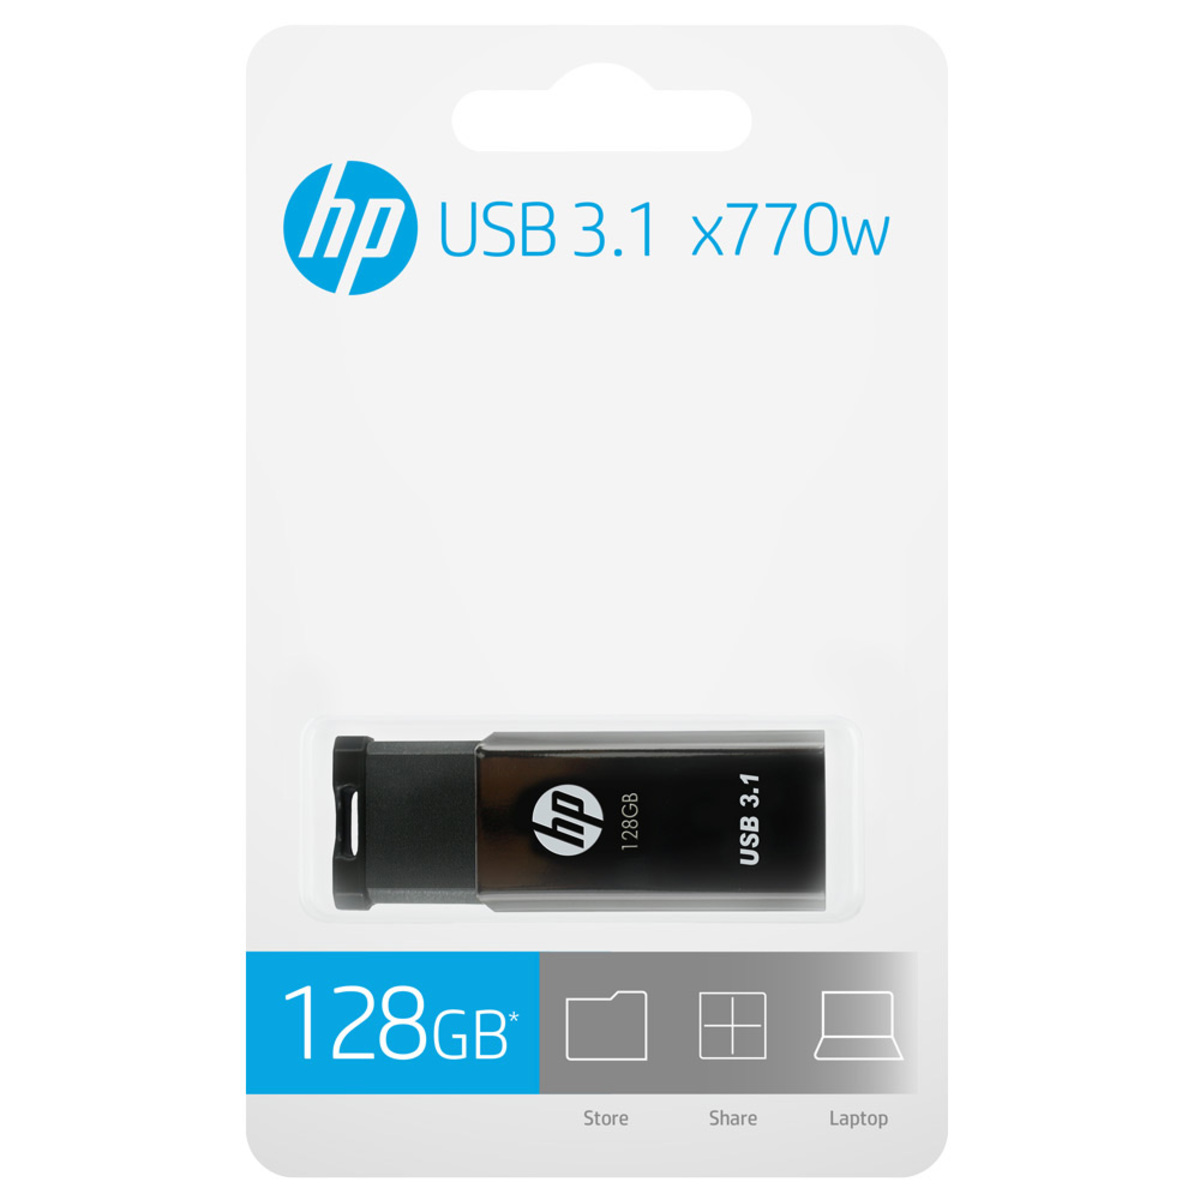 HP USB 3.1 Flash Drive HPFD770W 128GB